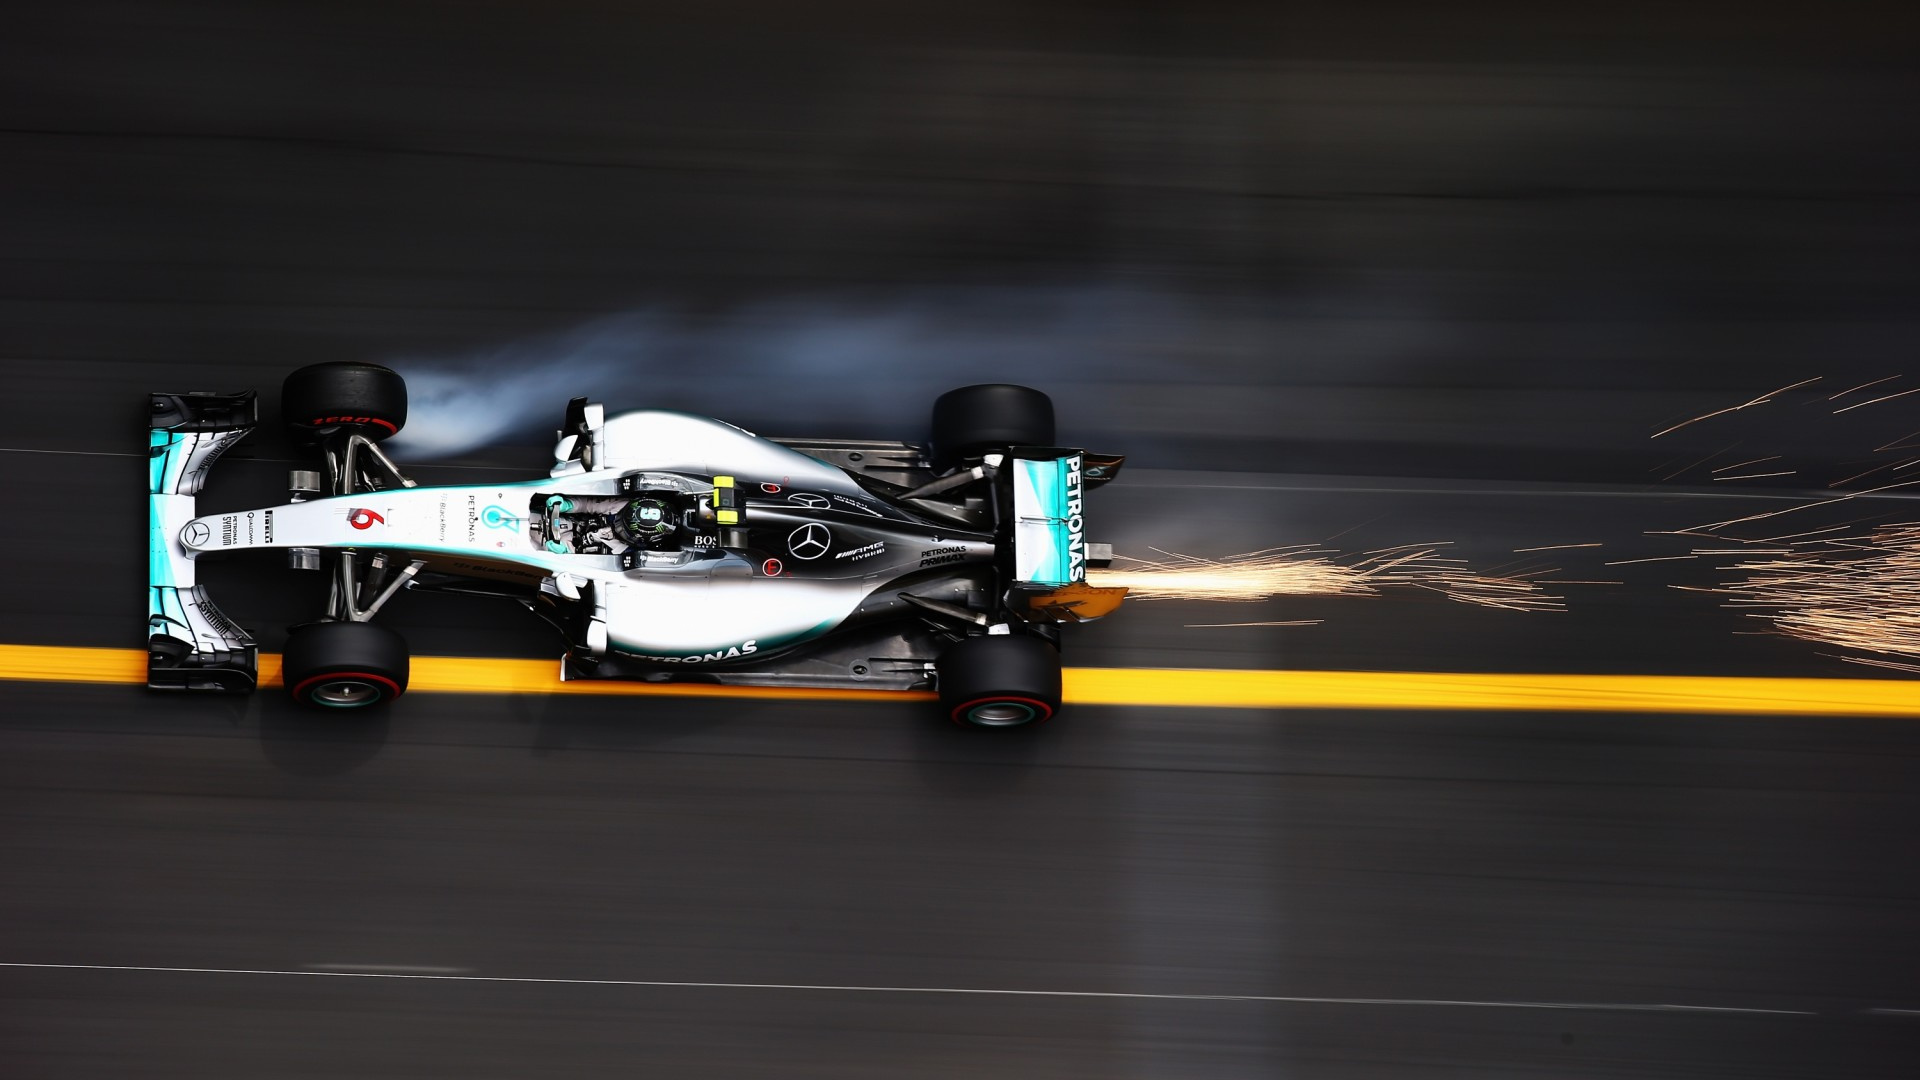 奔驰amg Petronas F1车队, 摩纳哥大奖赛, 麦克拉伦, 一级方程式赛车, 汽车赛车 壁纸 1920x1080 允许